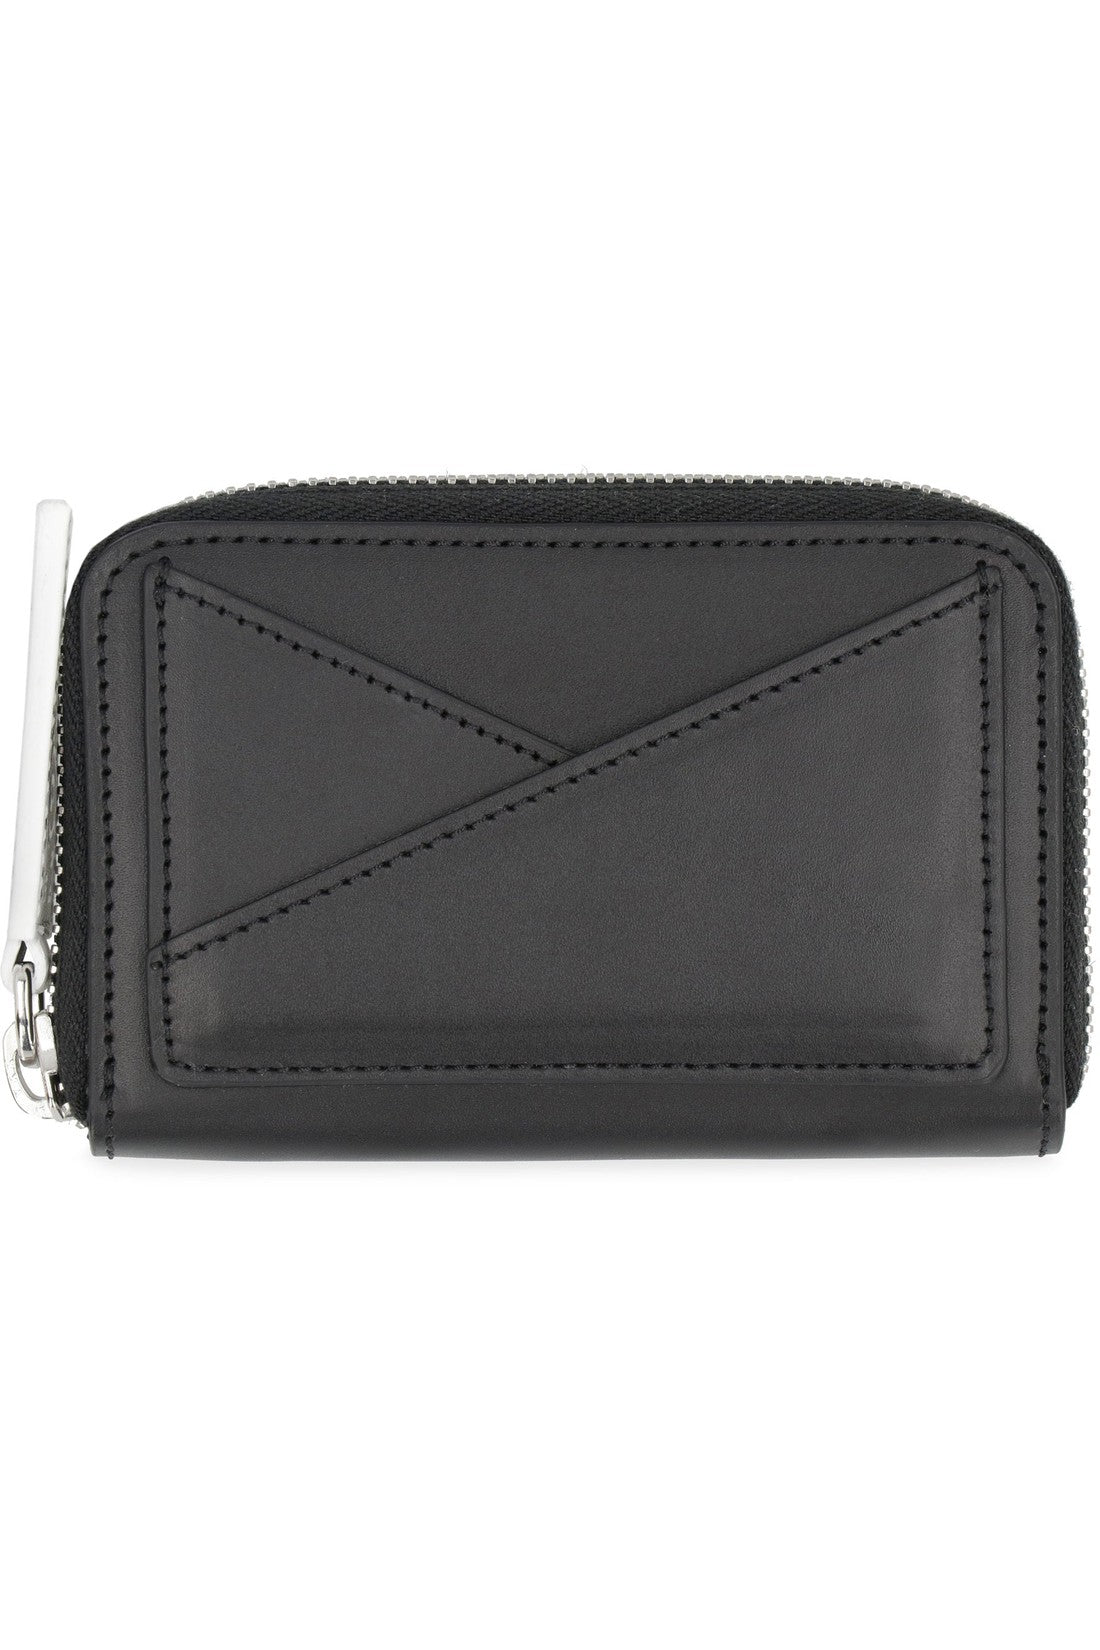 MM6 Maison Margiela-OUTLET-SALE-Japanese 6 micro leather wallet-ARCHIVIST